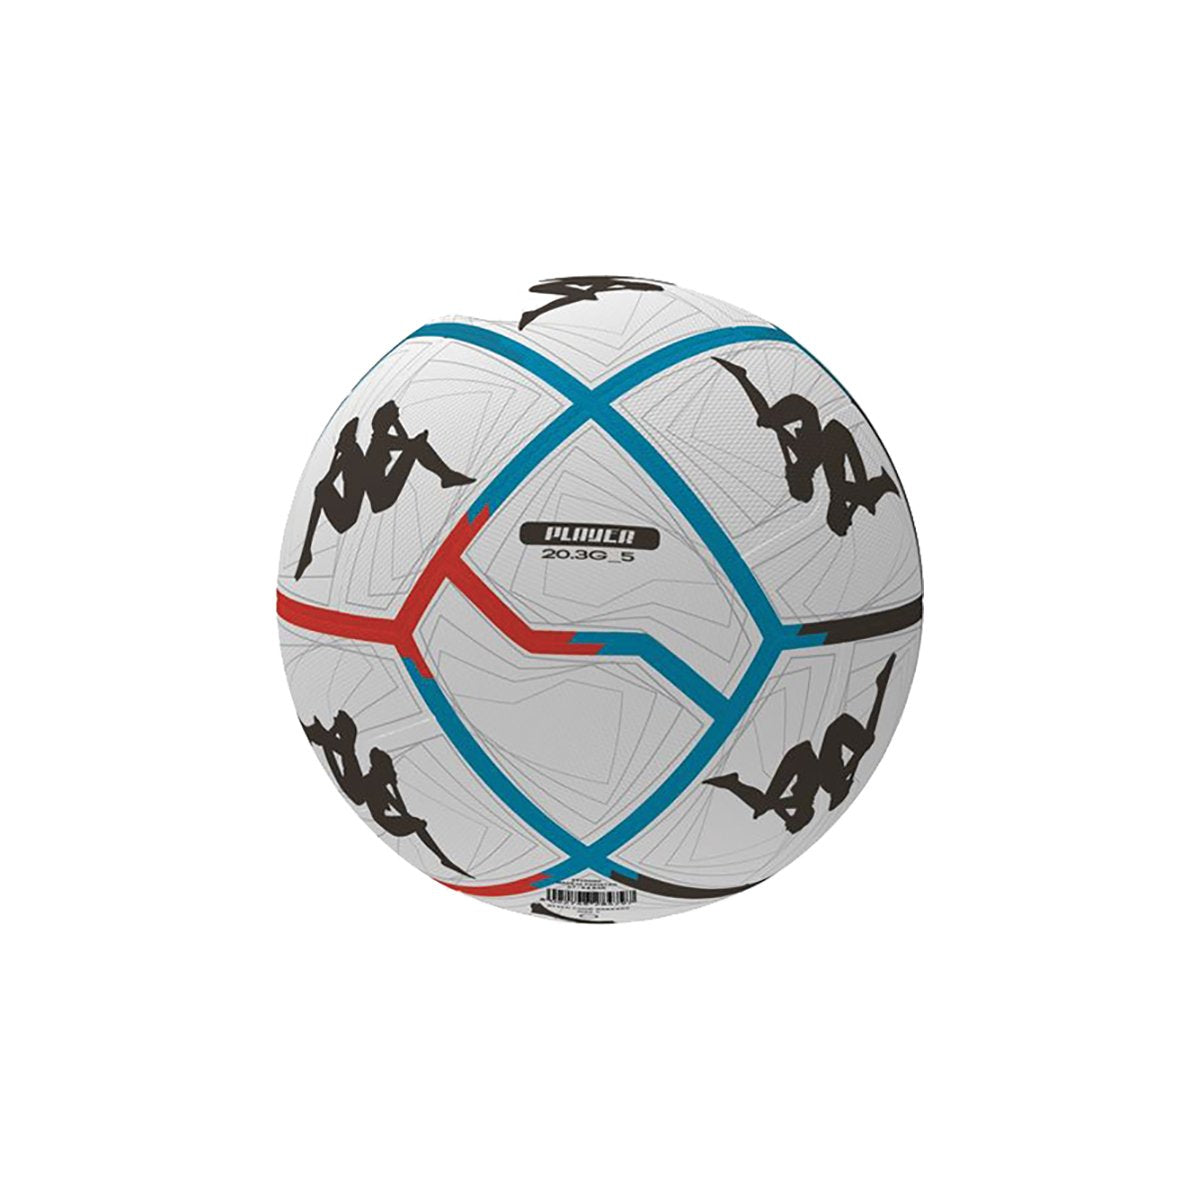 Balón de fútbol unisex 20.3G Blanco - Imagen 1